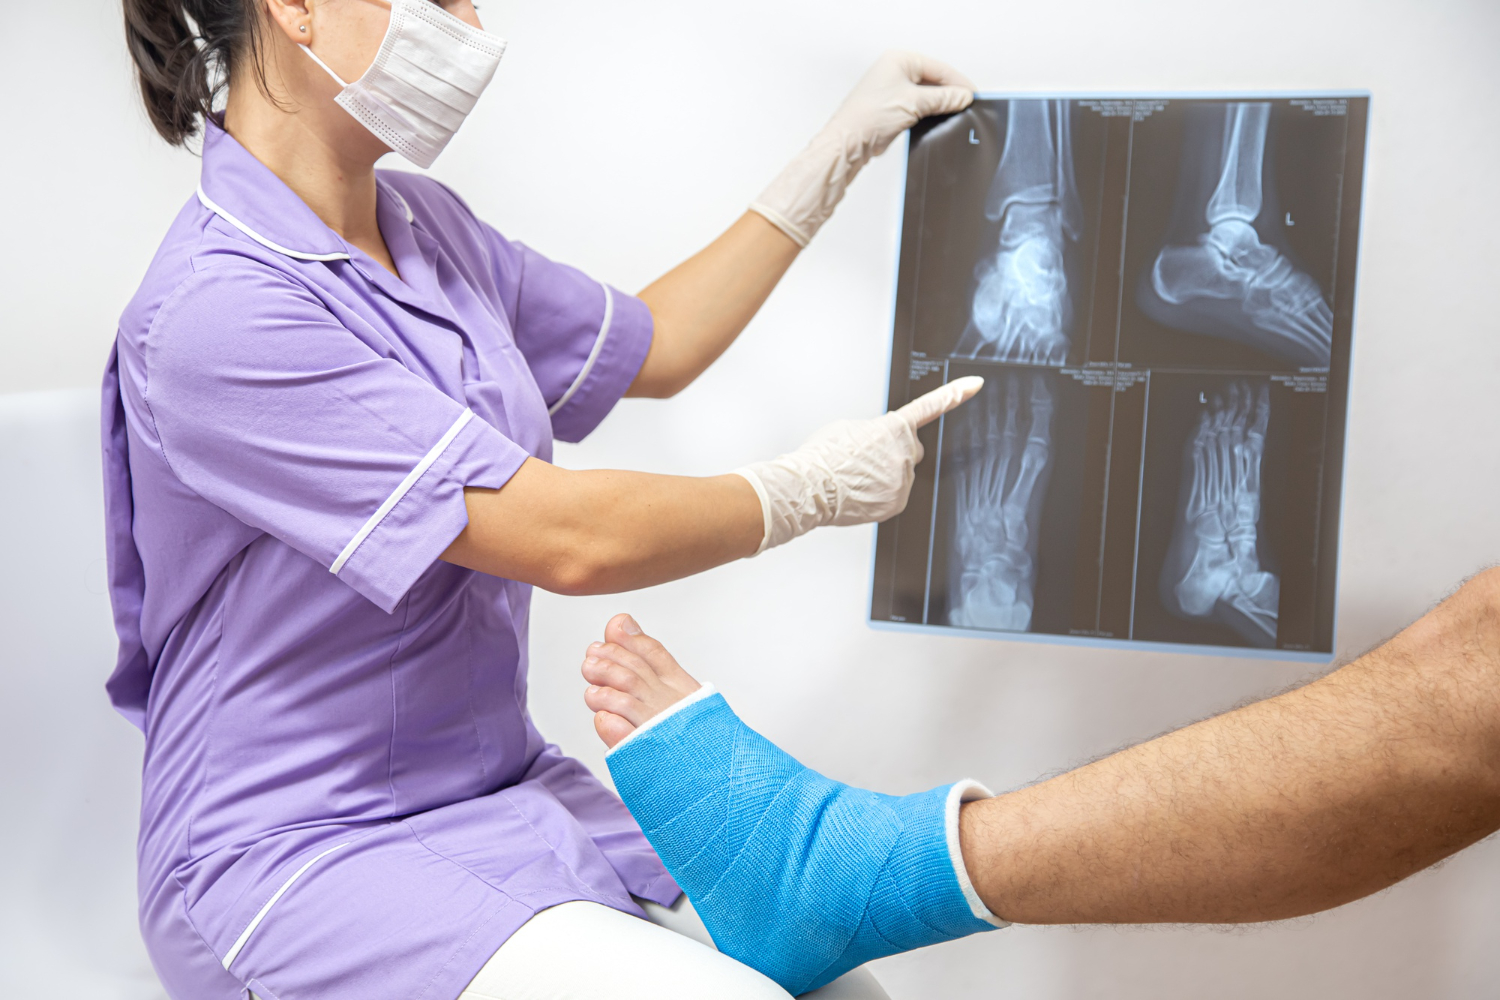 Osteoporoza to problem ponad 2 mln Polaków, głównie kobiet. Może prowadzić do ciężkiego kalectwa i śmierci, ale w Polsce wciąż jest mocno lekceważona